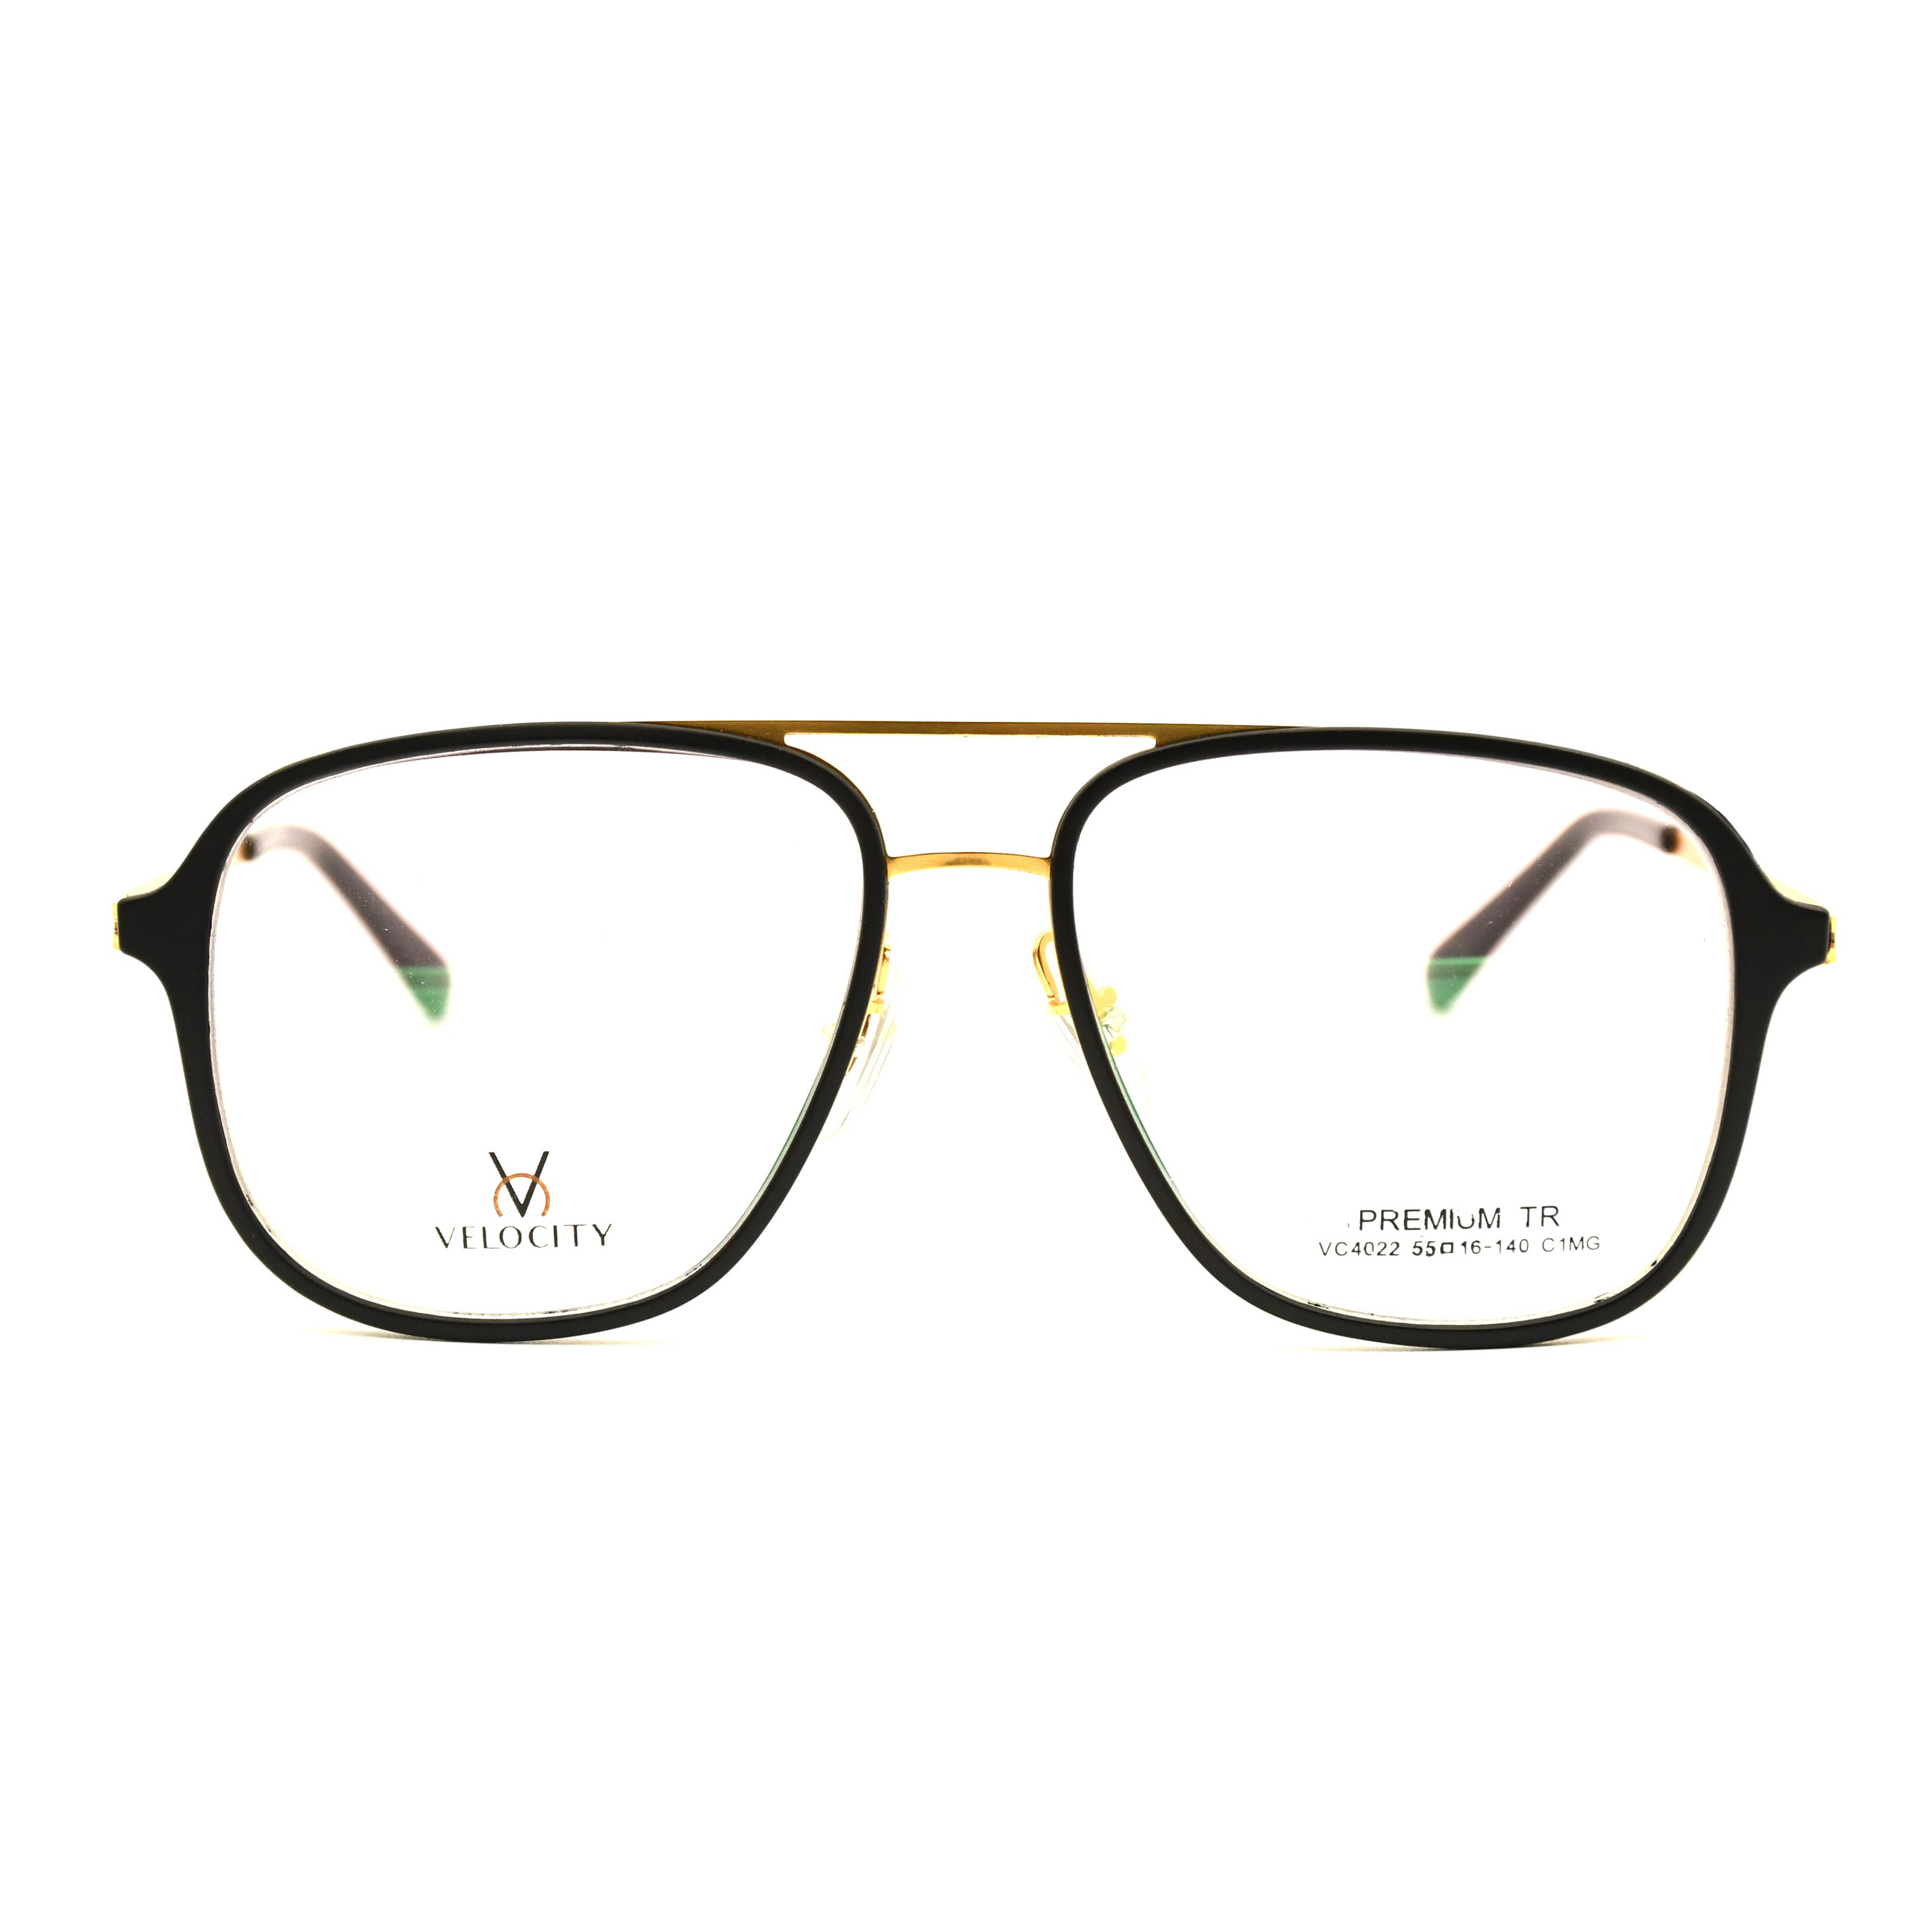 Velocity Rectangle Full Rim Eyeglasses - 4022-C1MG